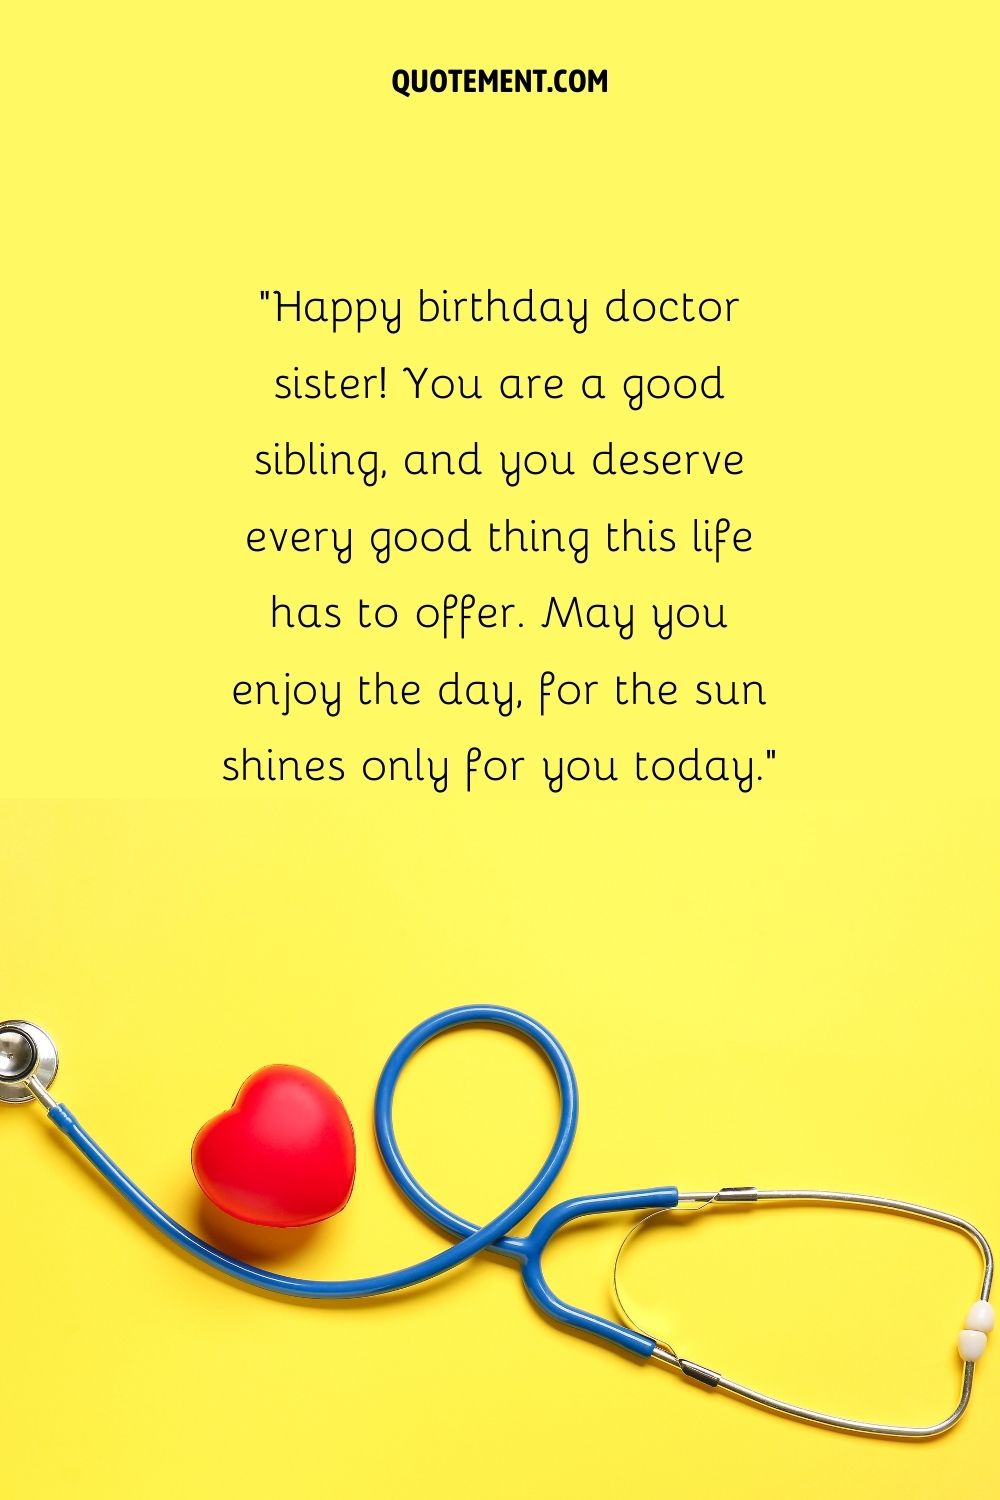 feliz cumpleaños hermana doctora representada por lo básico del equipo médico